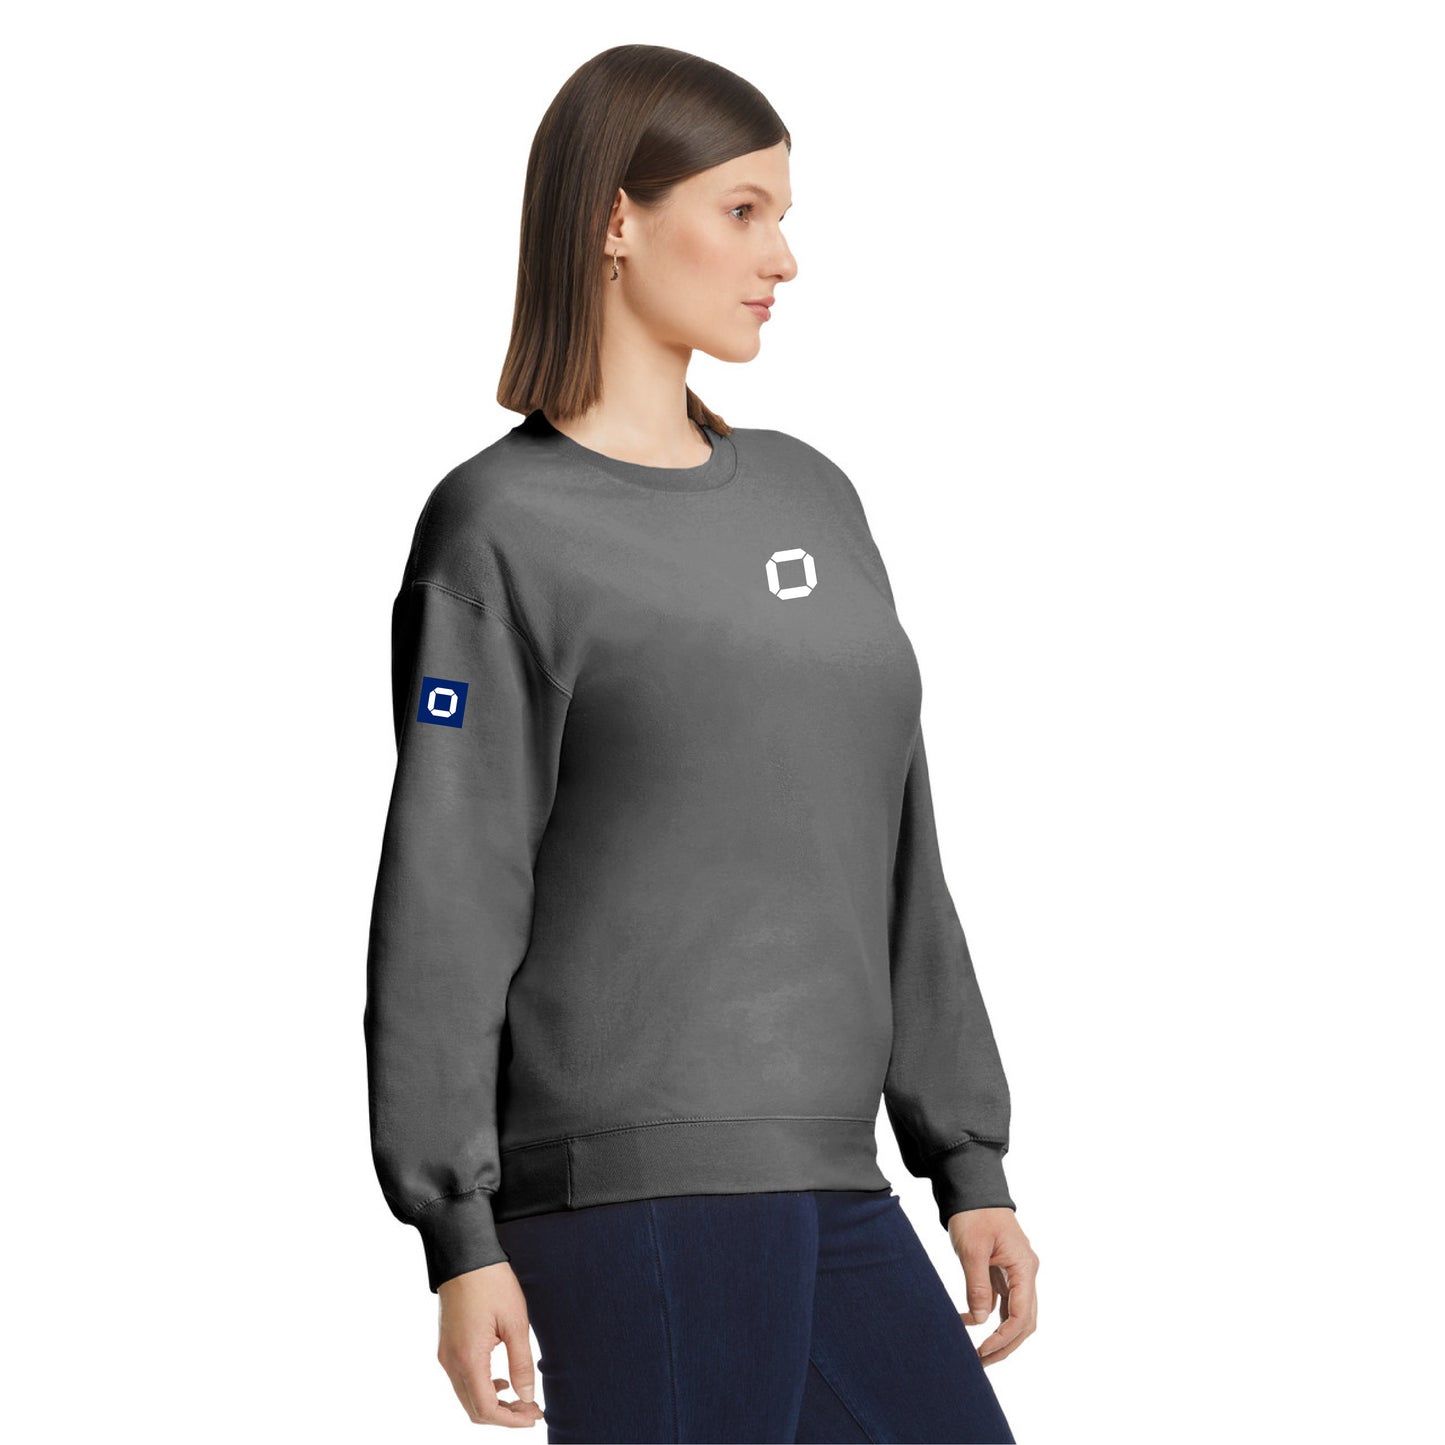 Cyber ​​Force® Portal Identity Sweatshirt